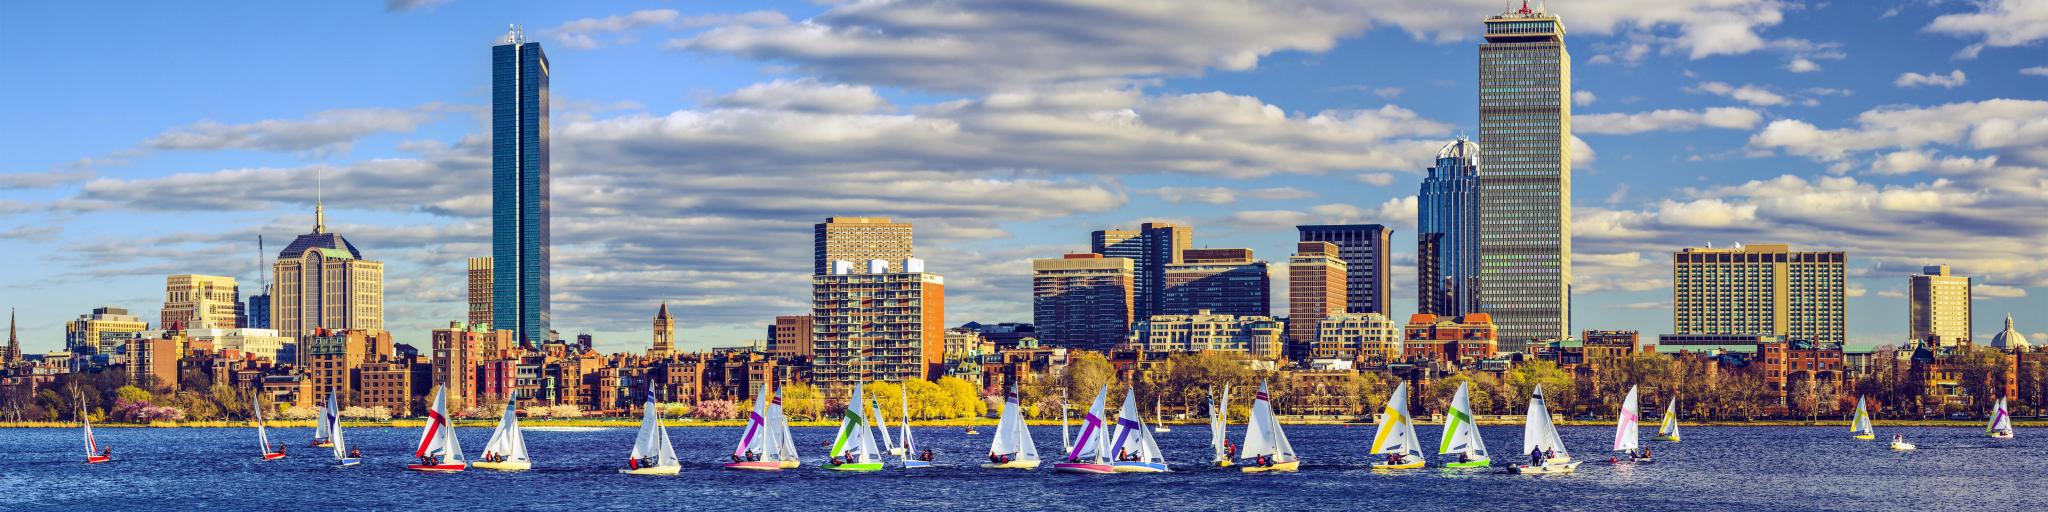 Panoramic skyline view of Boston, Massachusetts